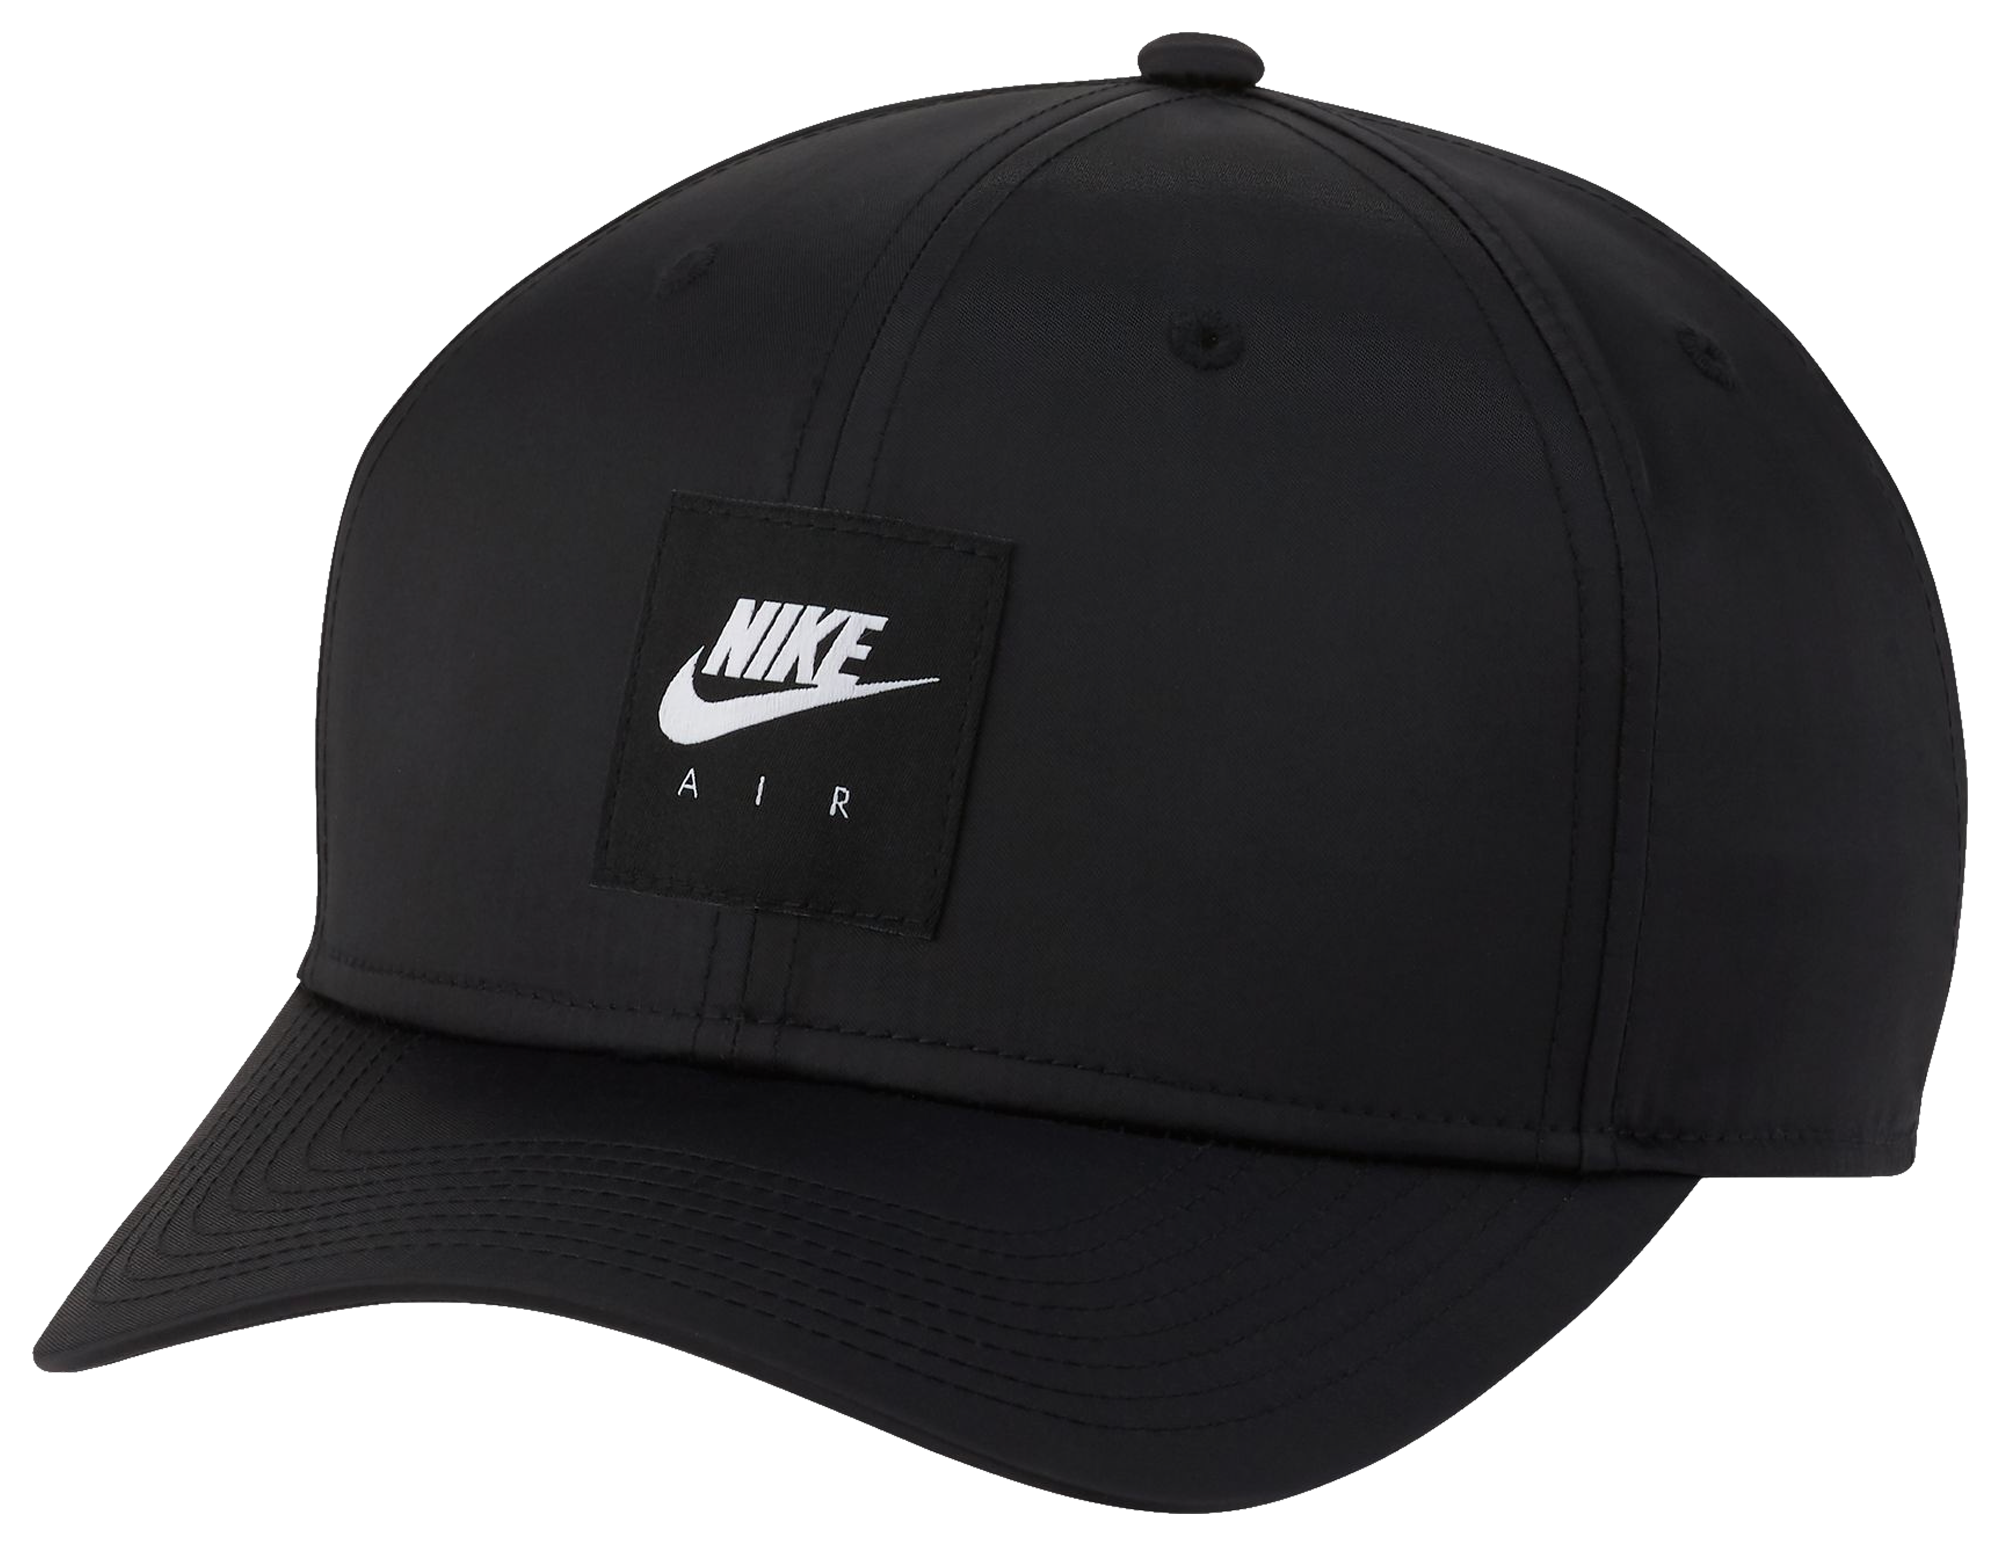 Nike Air HBR Cap - Men's